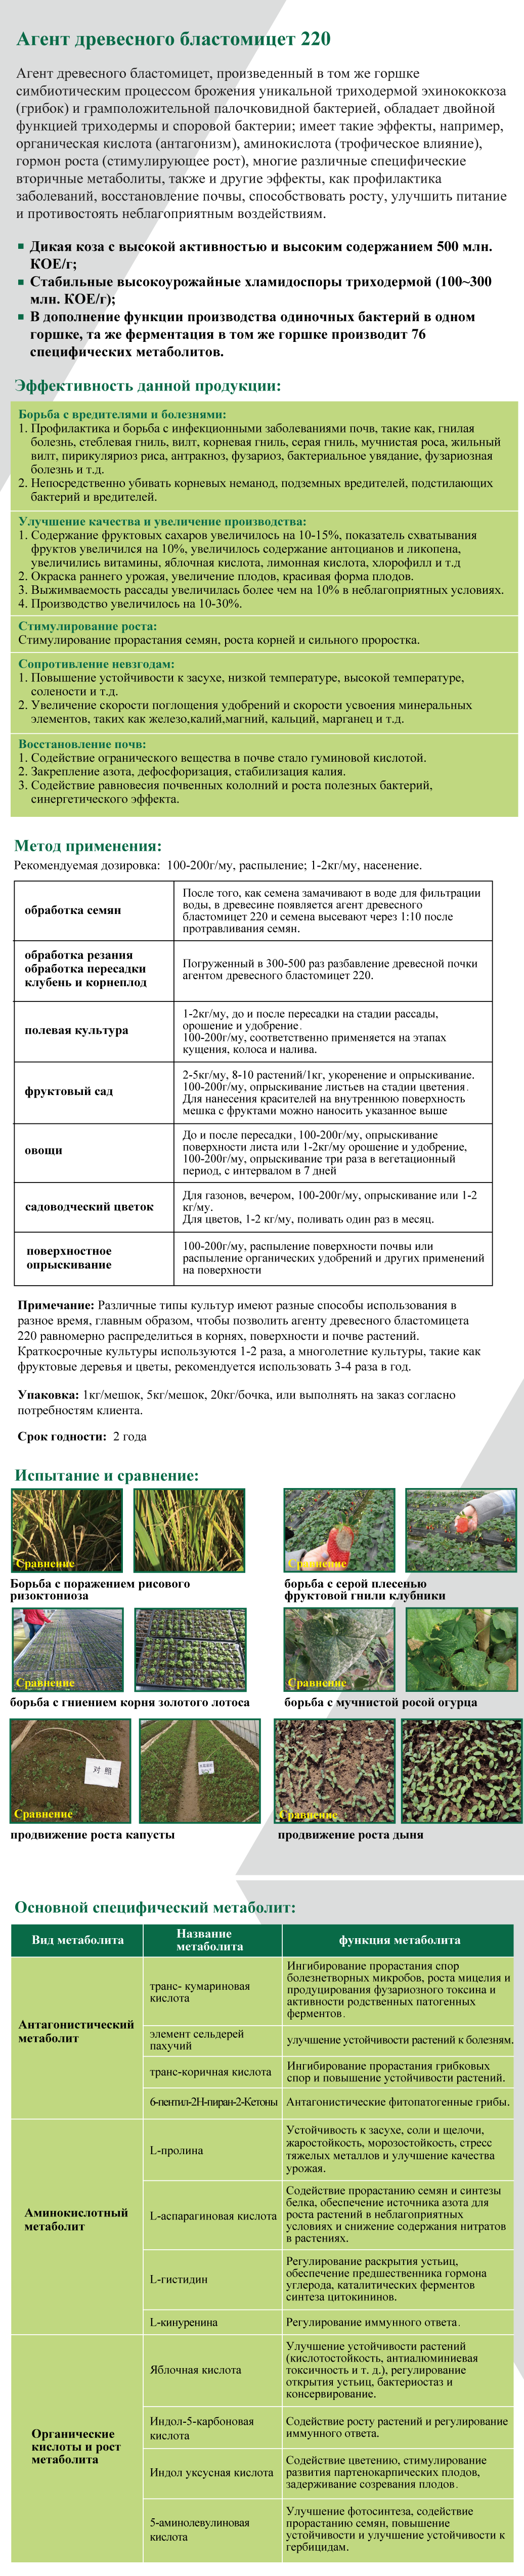 木芽220俄语网页版.png